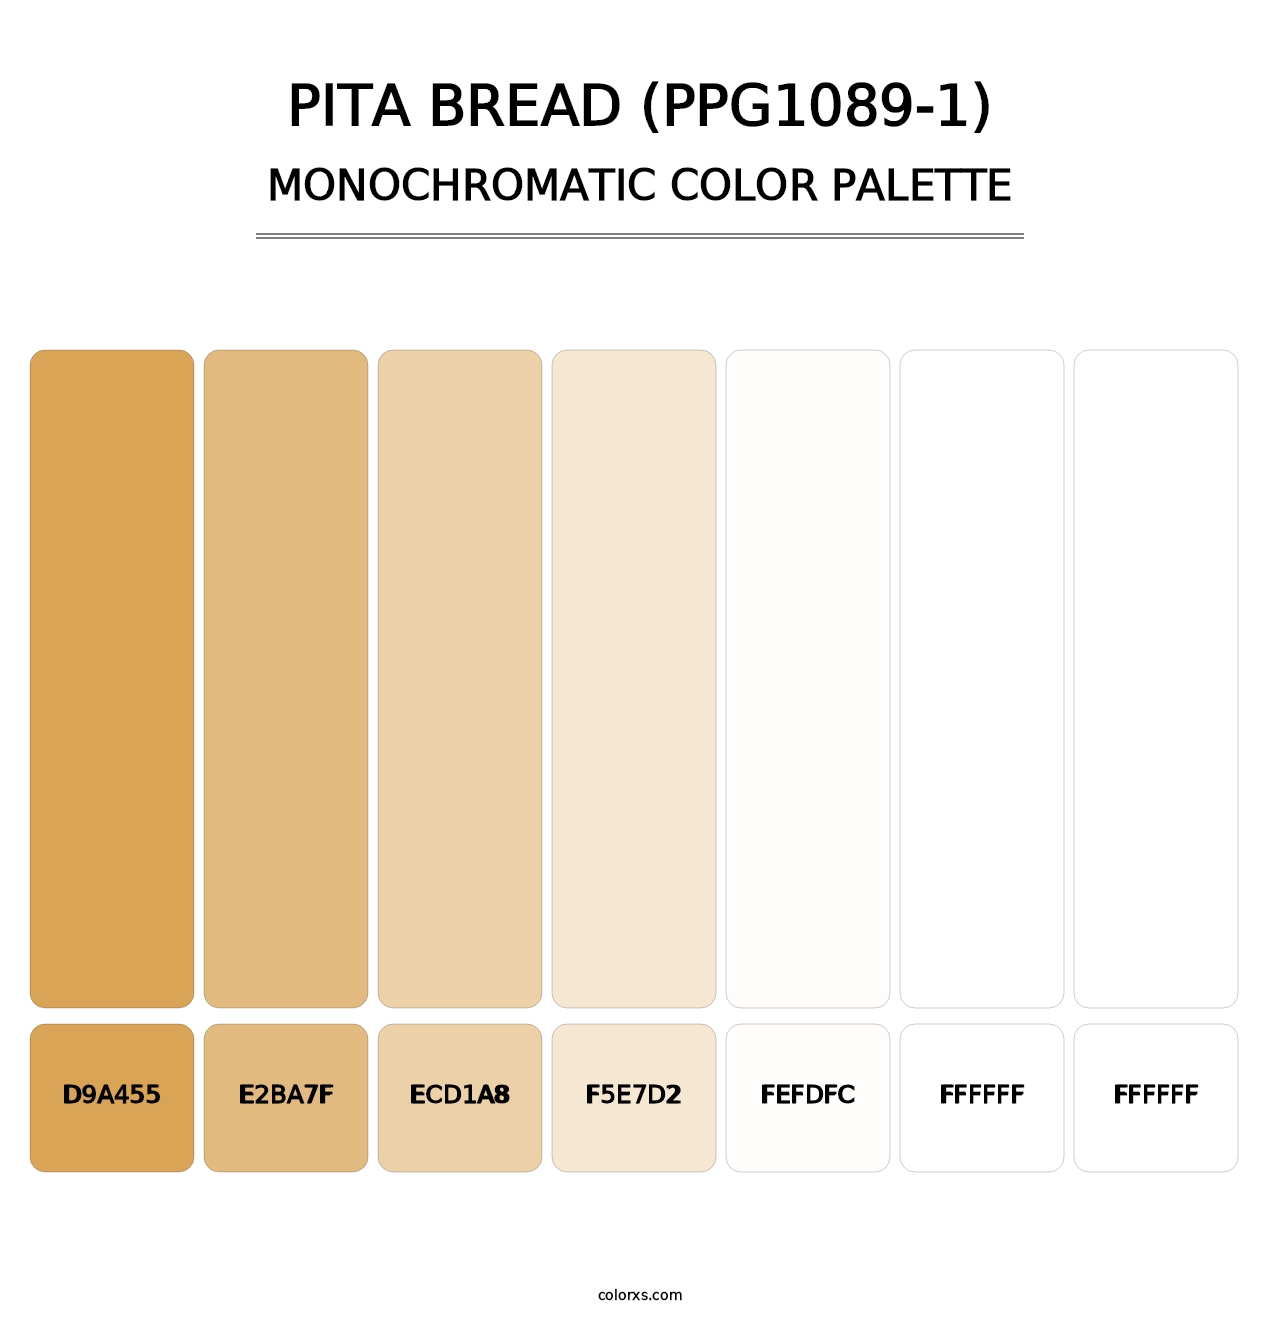 Pita Bread (PPG1089-1) - Monochromatic Color Palette